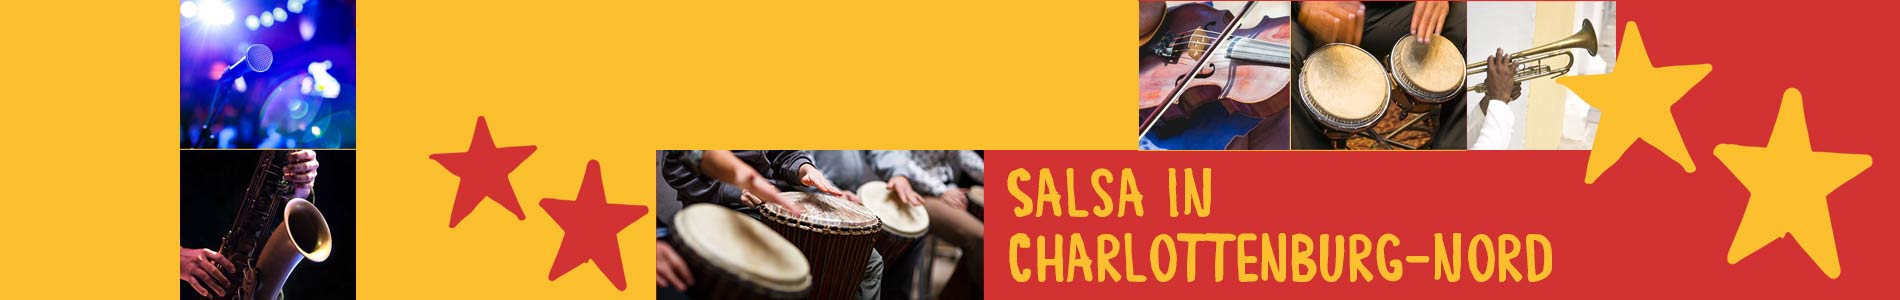 Salsa in Lotte – Salsa lernen und tanzen, Tanzkurse, Partys, Veranstaltungen